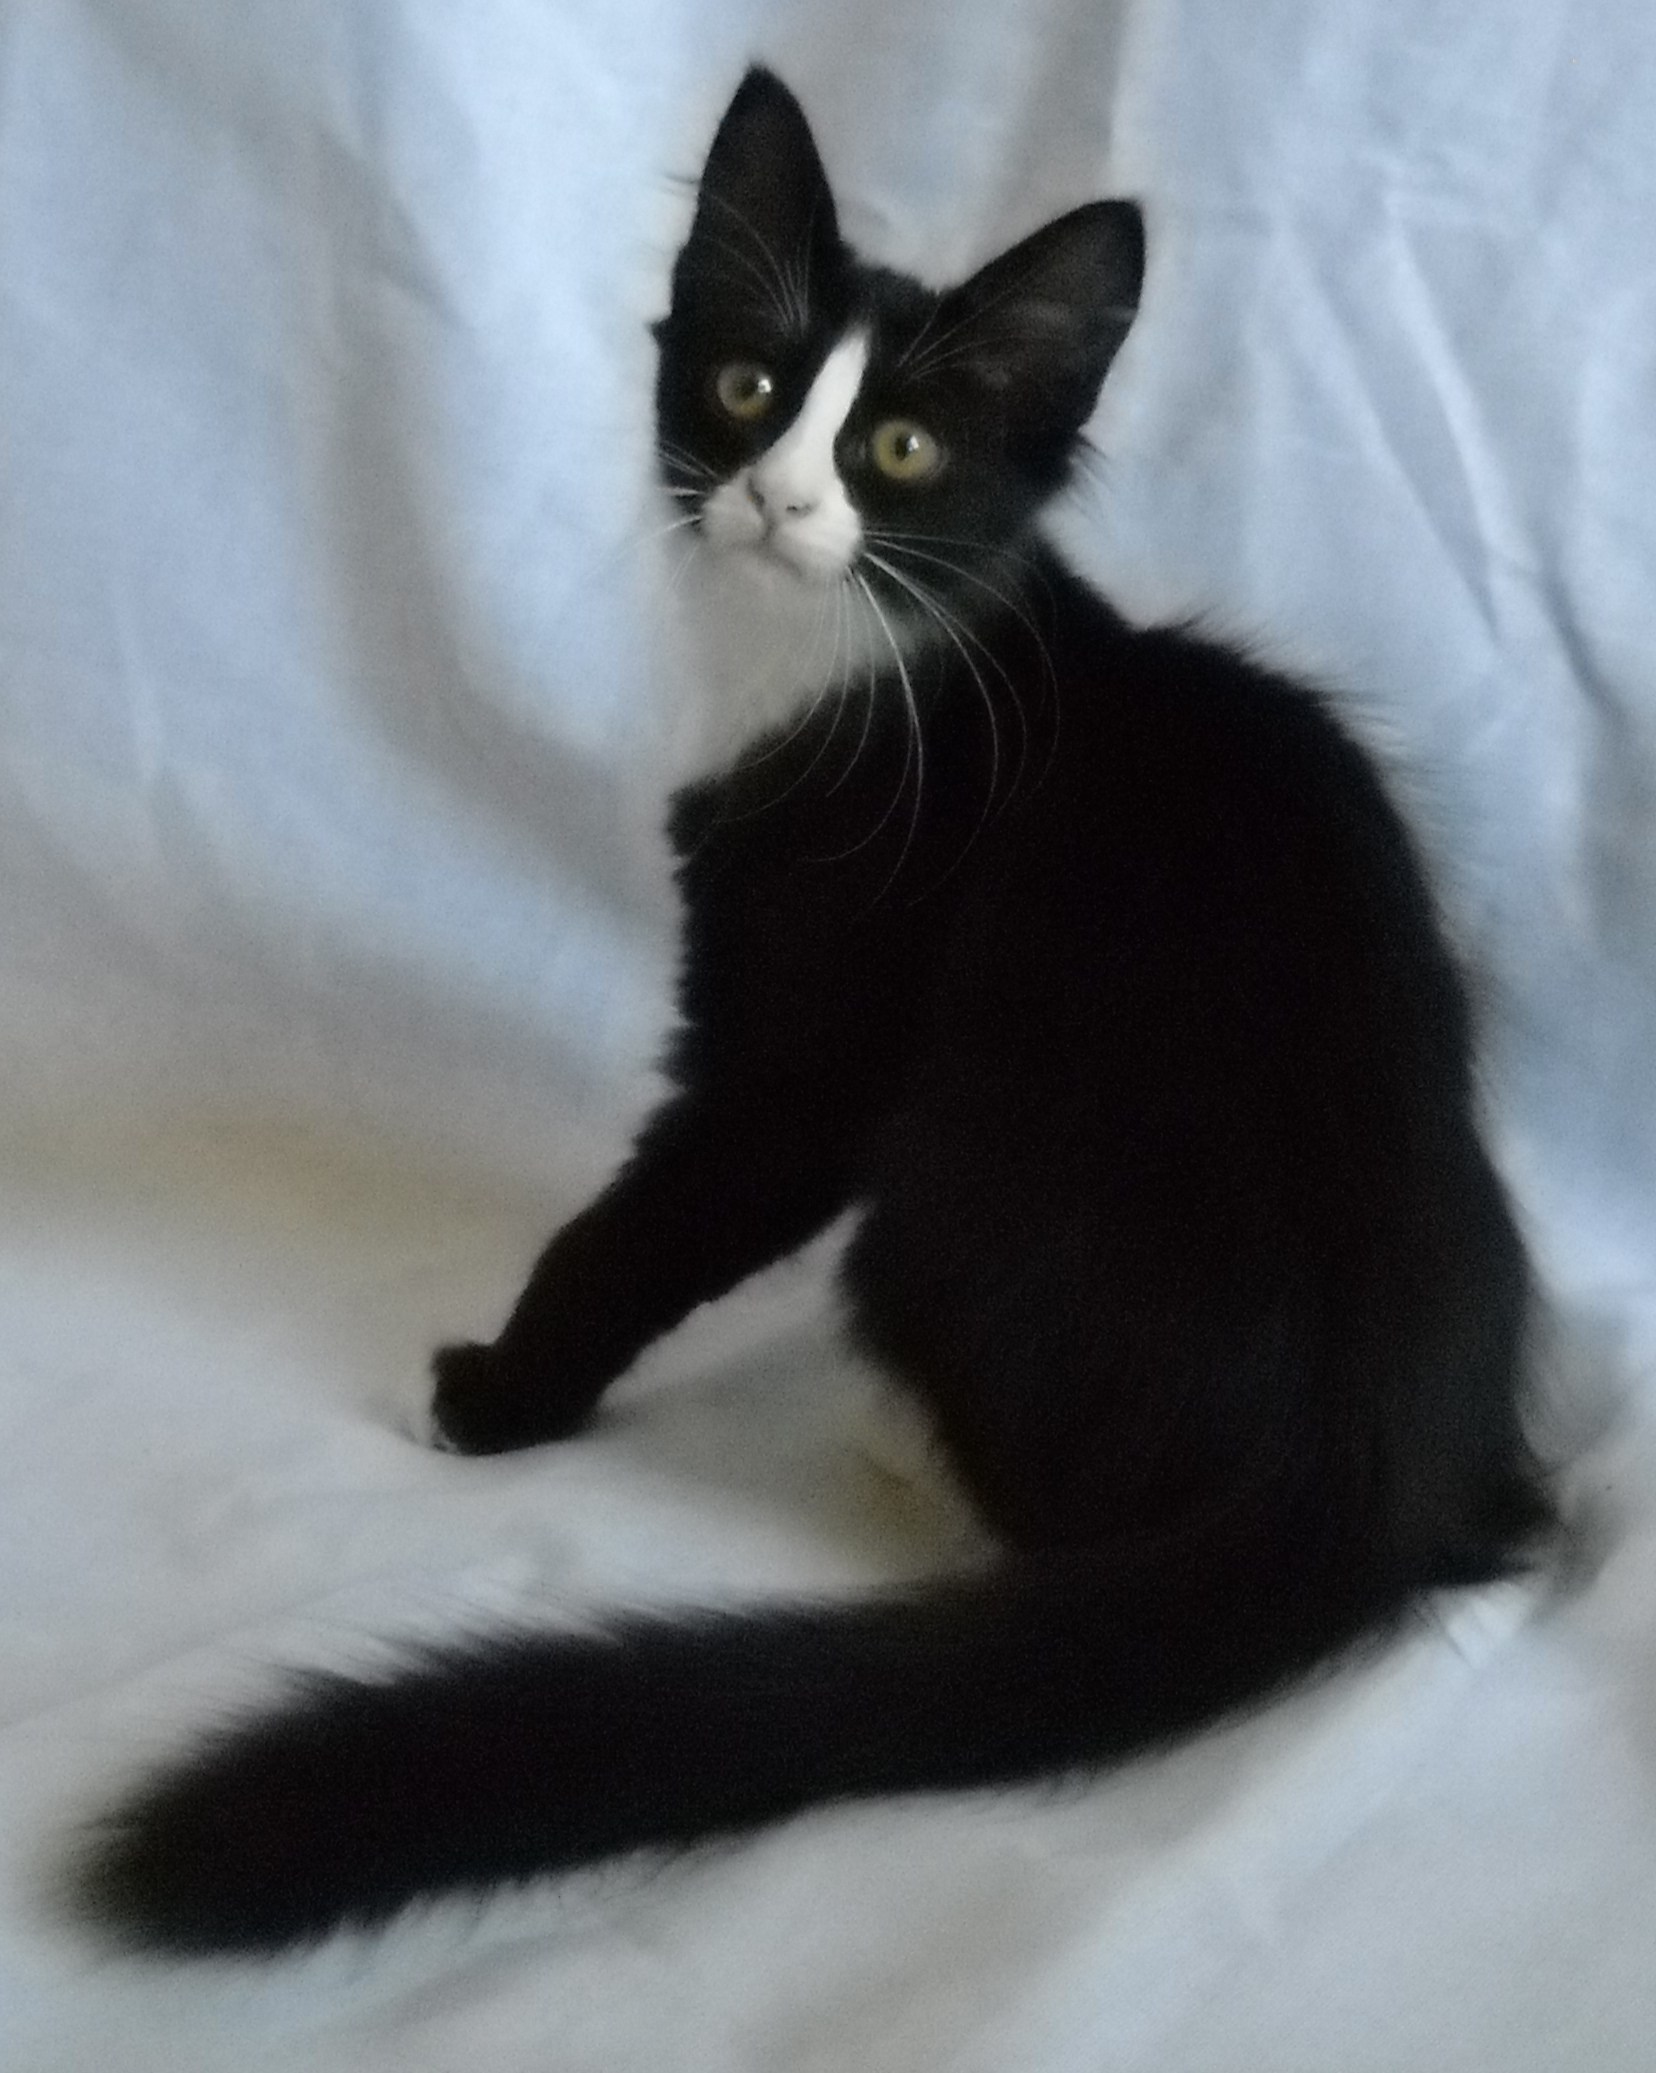 Турецкая ангора кот черный с белым - картинки и фото koshka.top